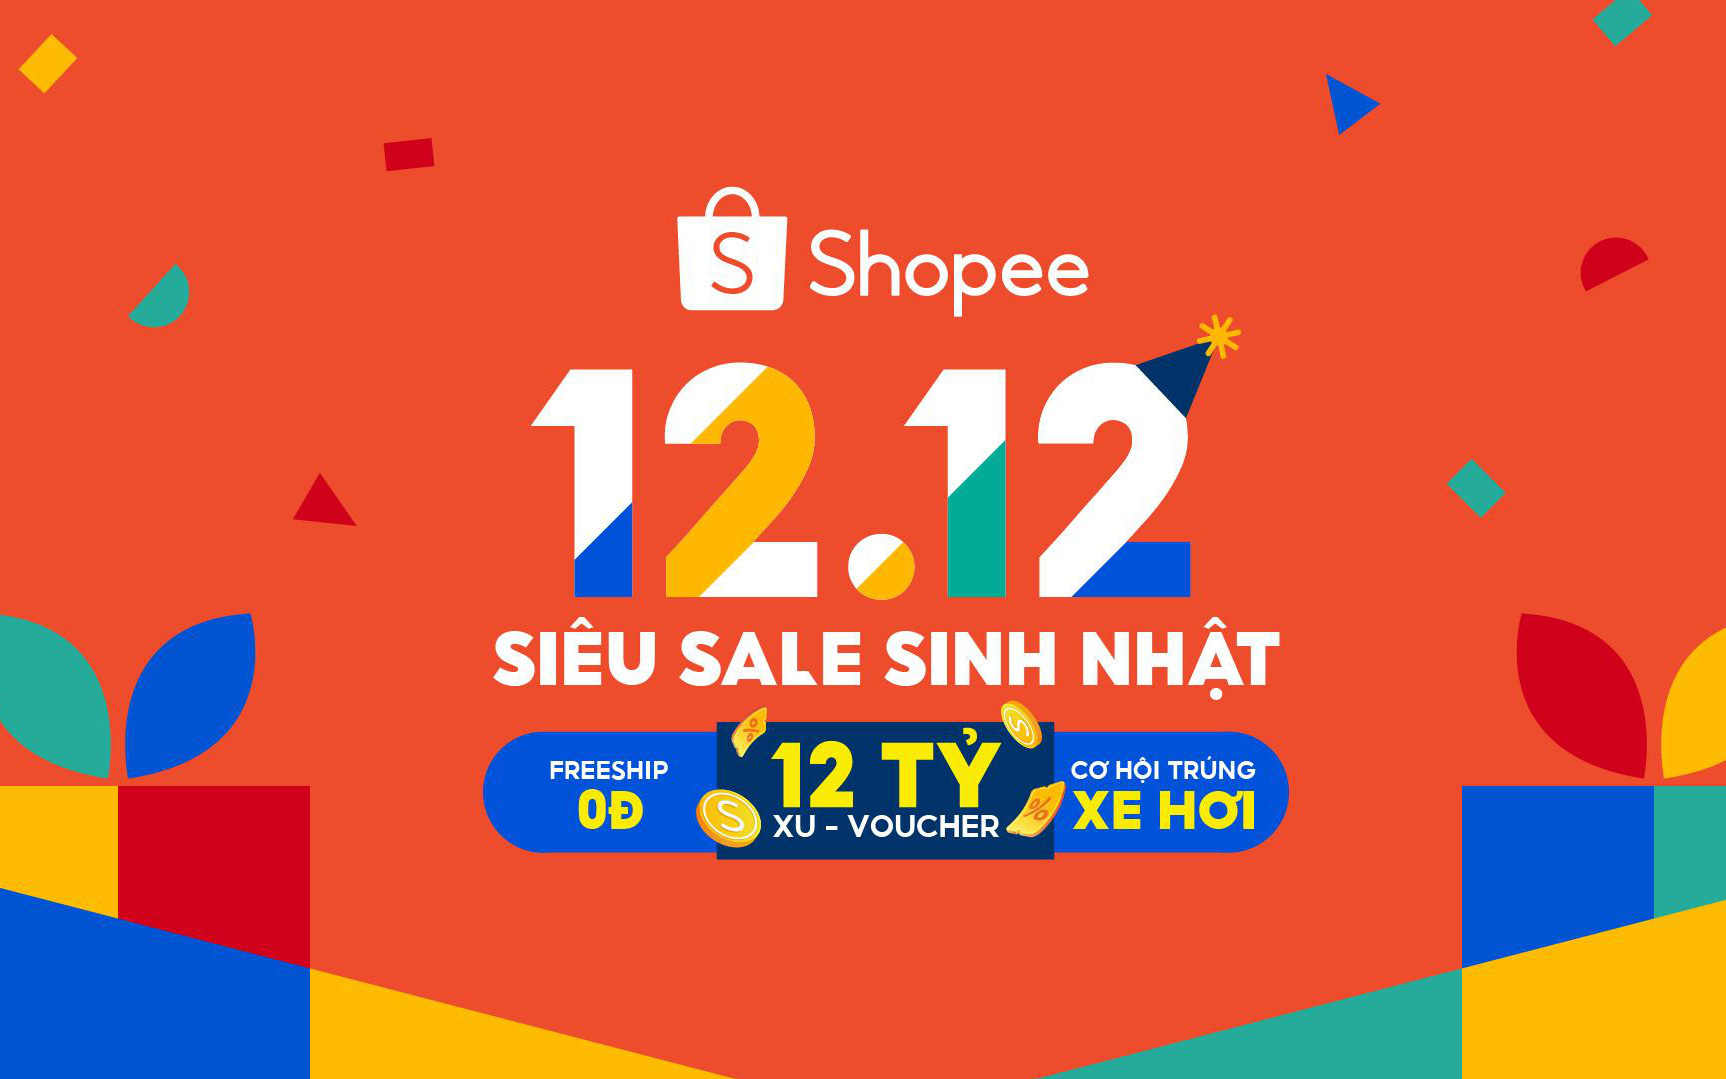 Shopee khởi động sự kiện 12.12 siêu sale sinh nhật với nhiều niềm vui cho người mua sắm